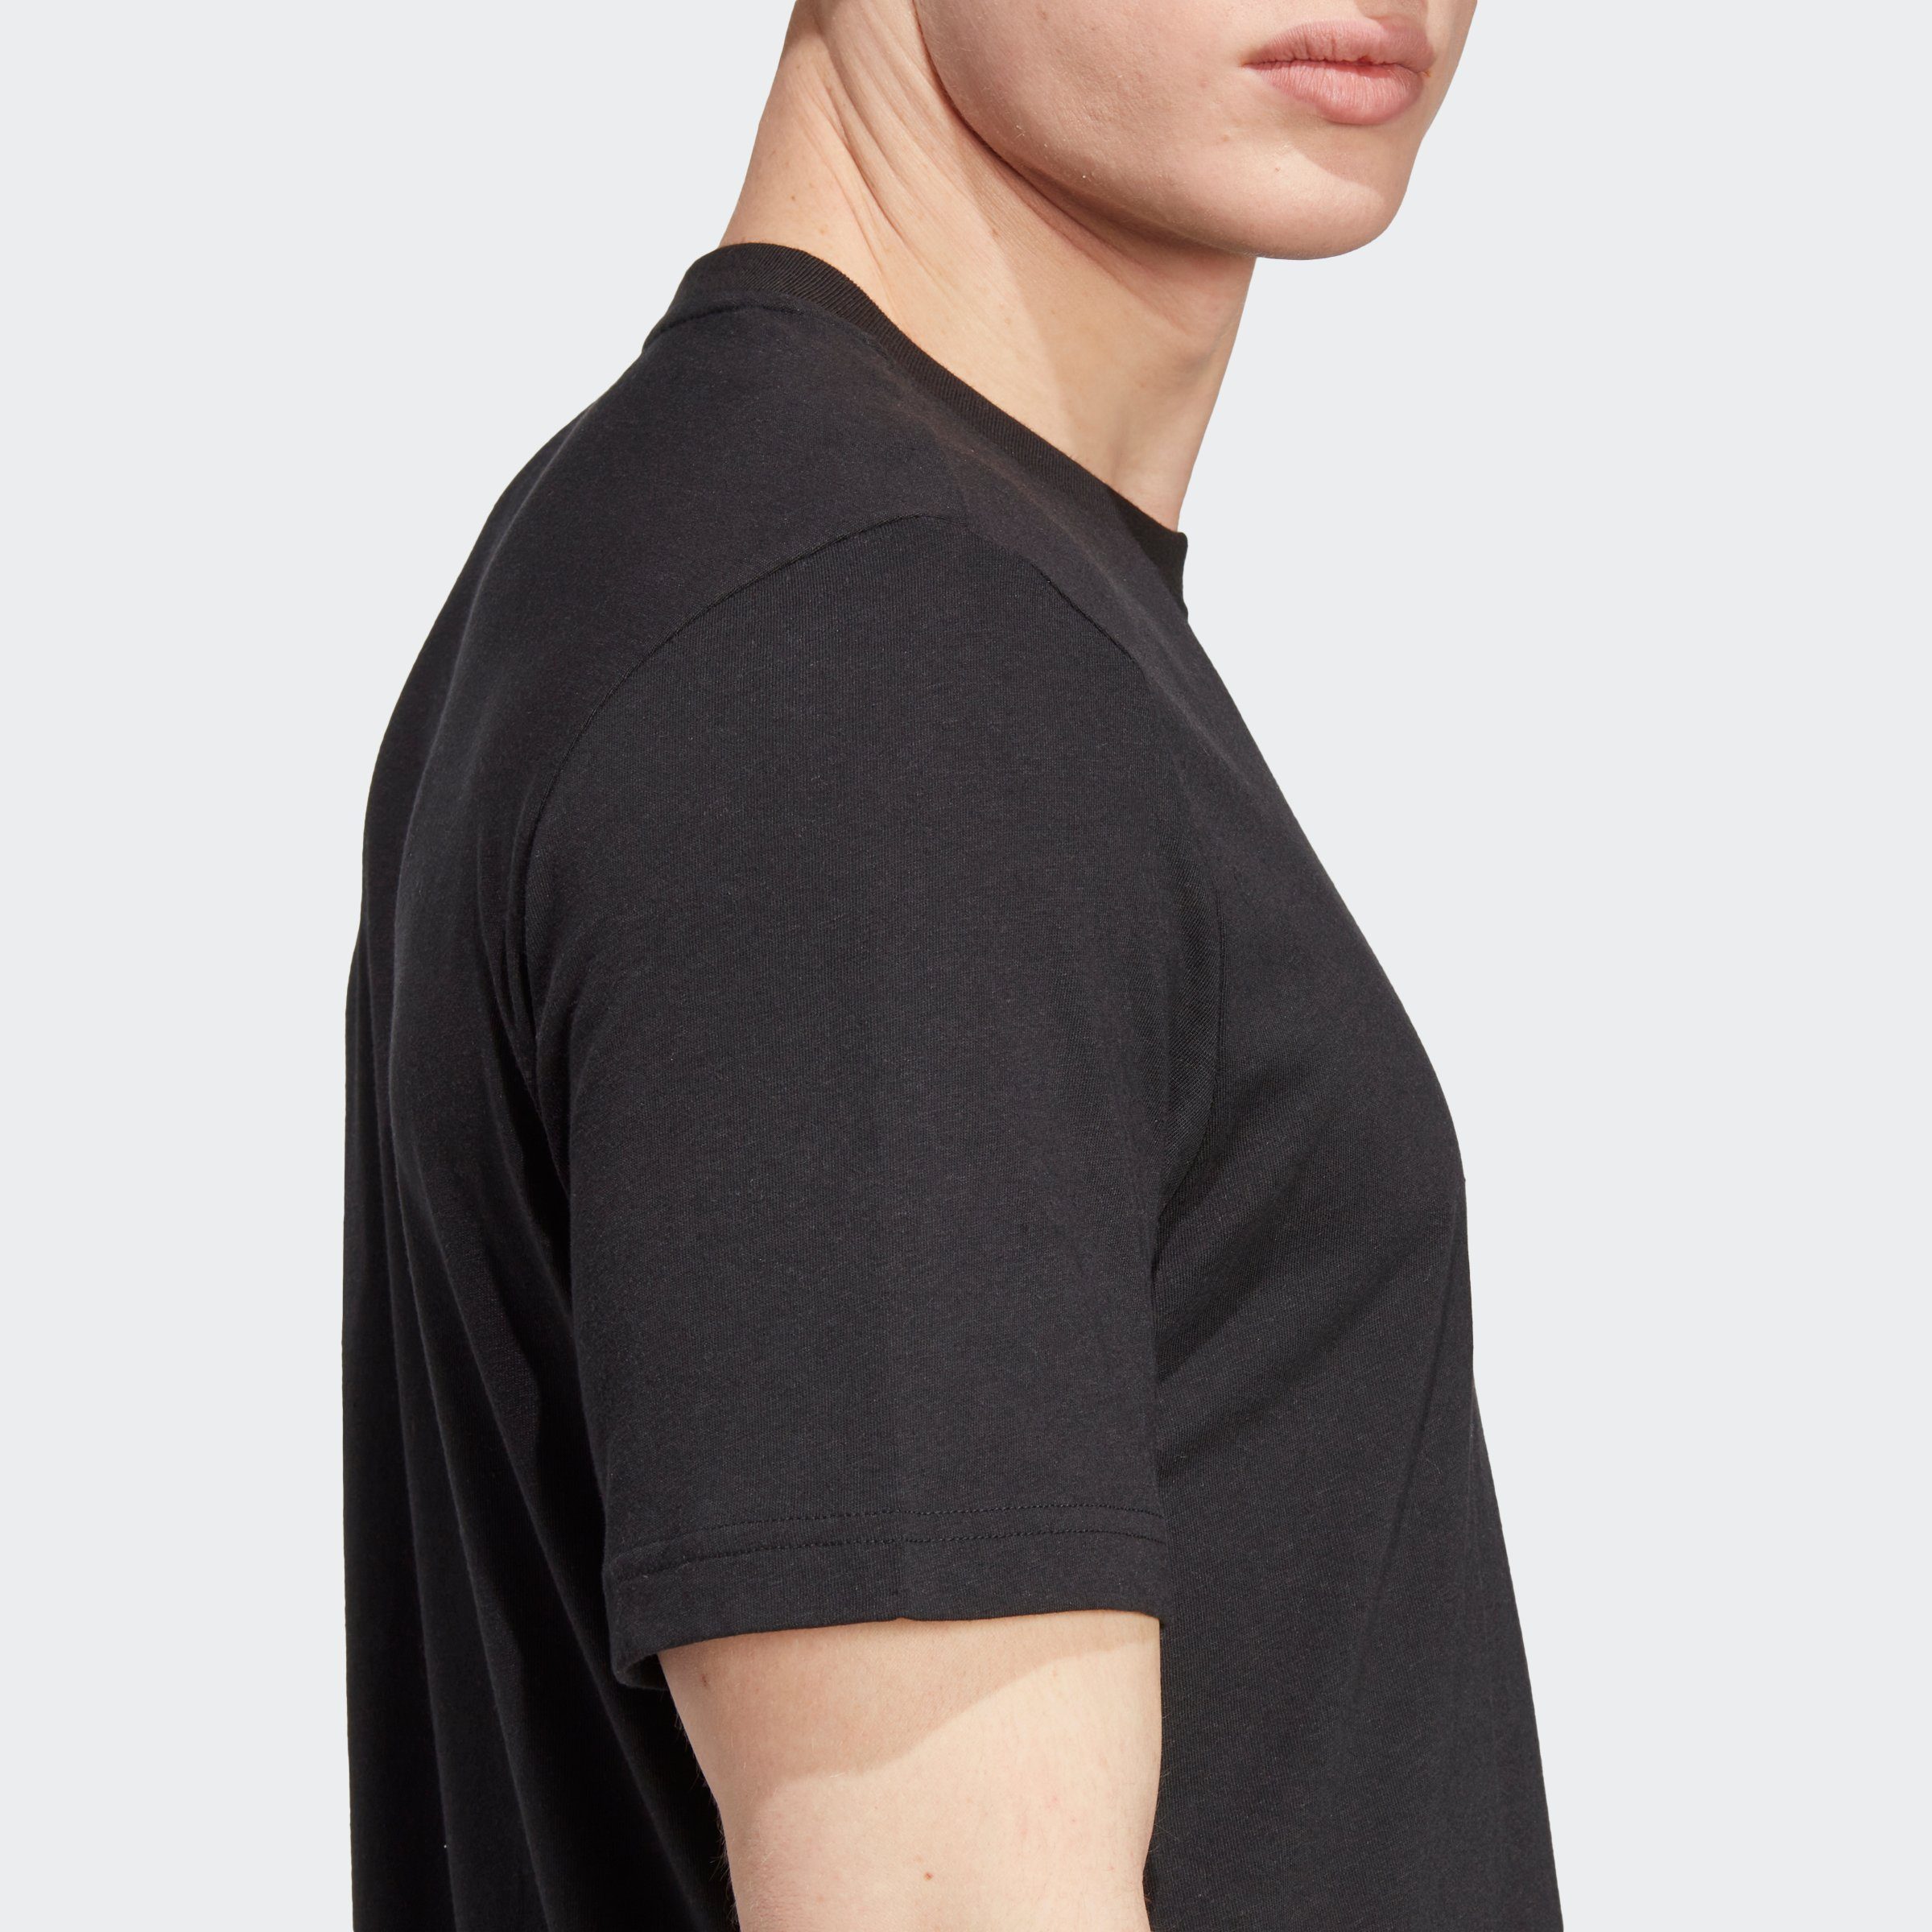 Black HEMP adidas T-Shirt Originals MADE ESSENTIALS+ WITH